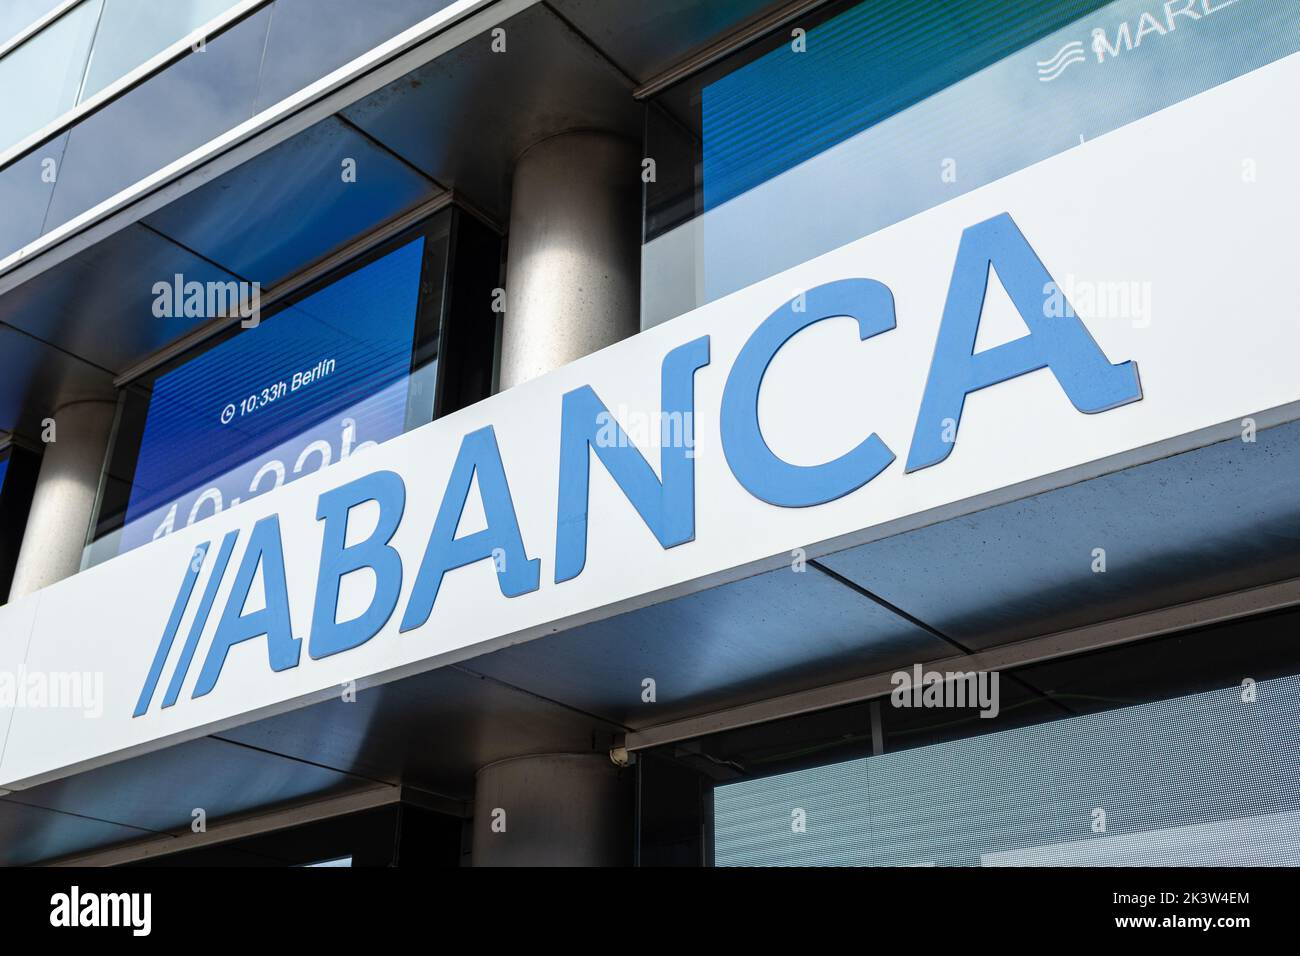 Coruna, Spain; september 23, 2022: Abanca bank sign on building facade Stock Photo